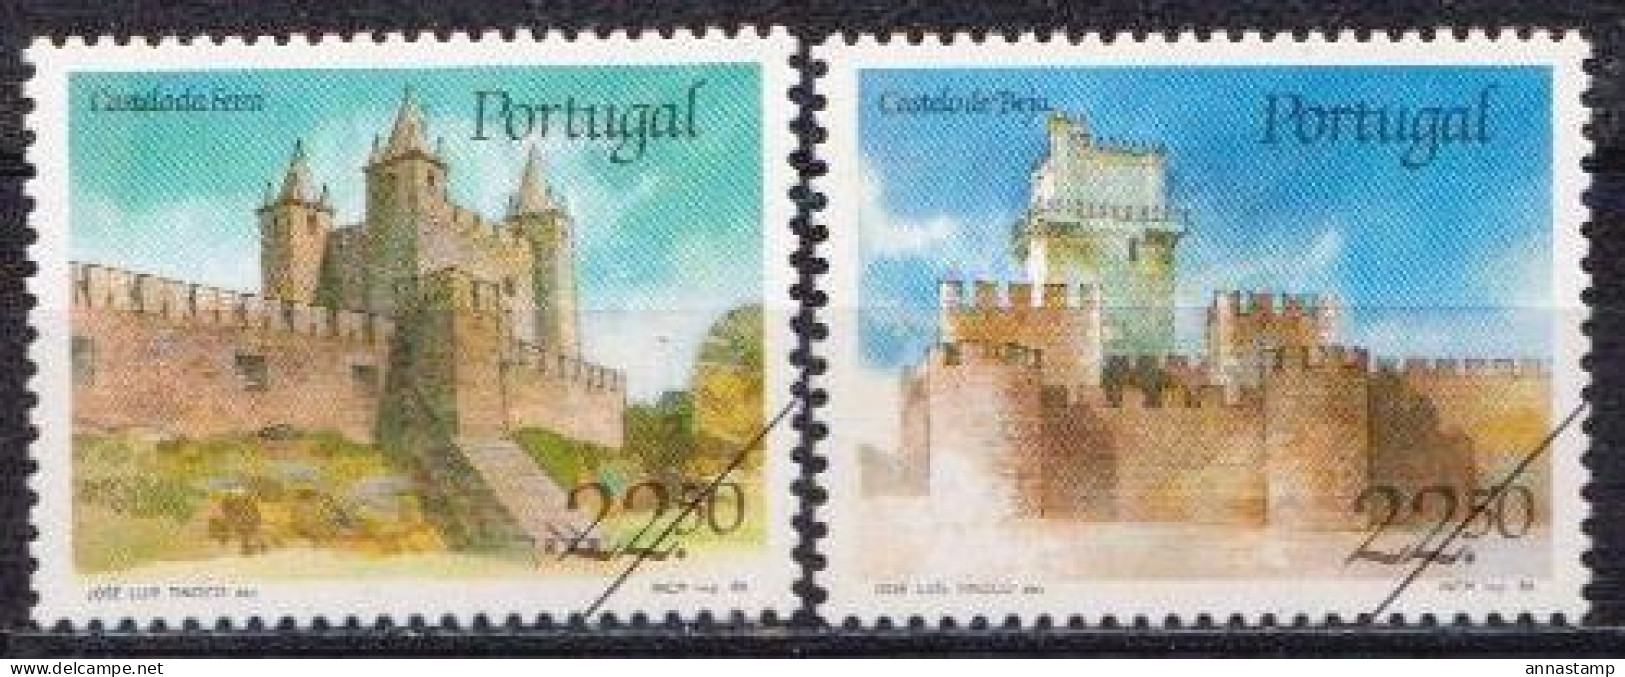 Portugal MNH Stamps, SPECIMEN - Kastelen